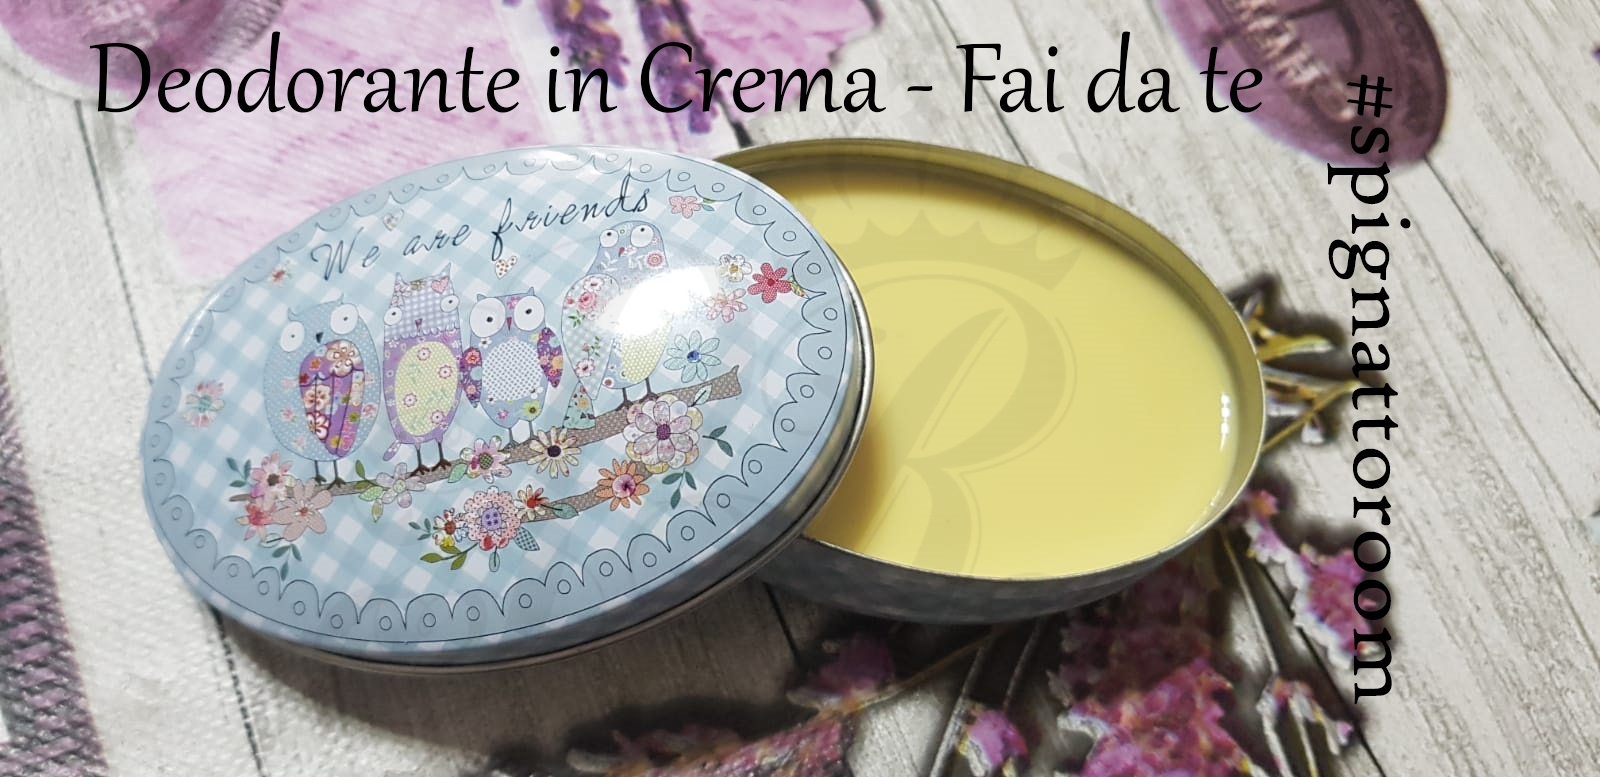 Deodorante In Crema Fai Da Te Official Progetto Rapunzel Italia